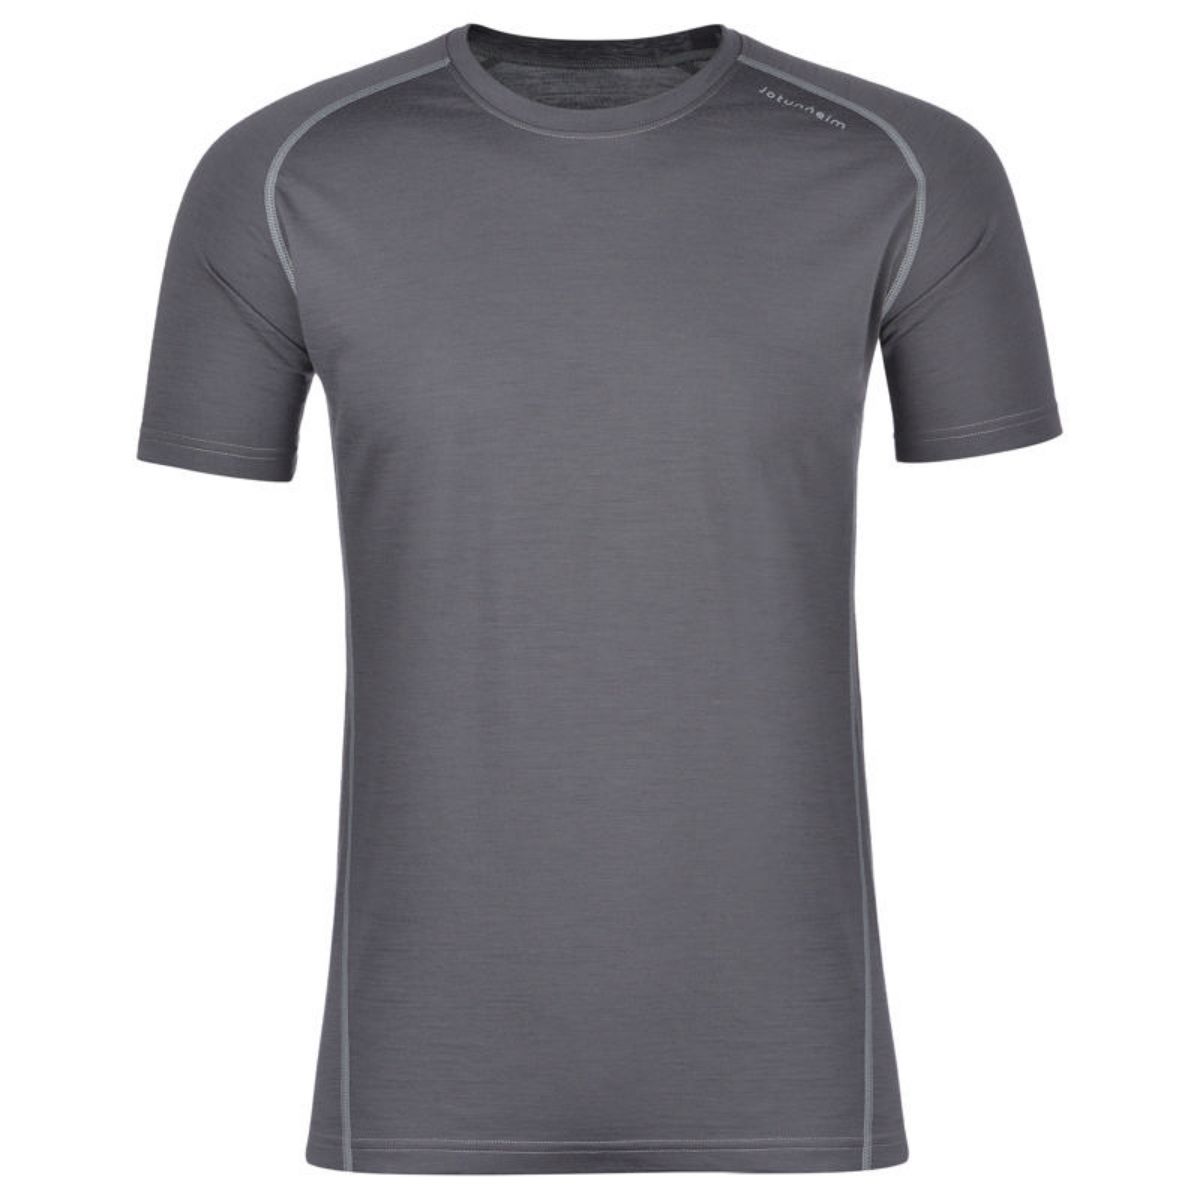 jotunheim-svellnose-merino-t-shirt-forged-iron